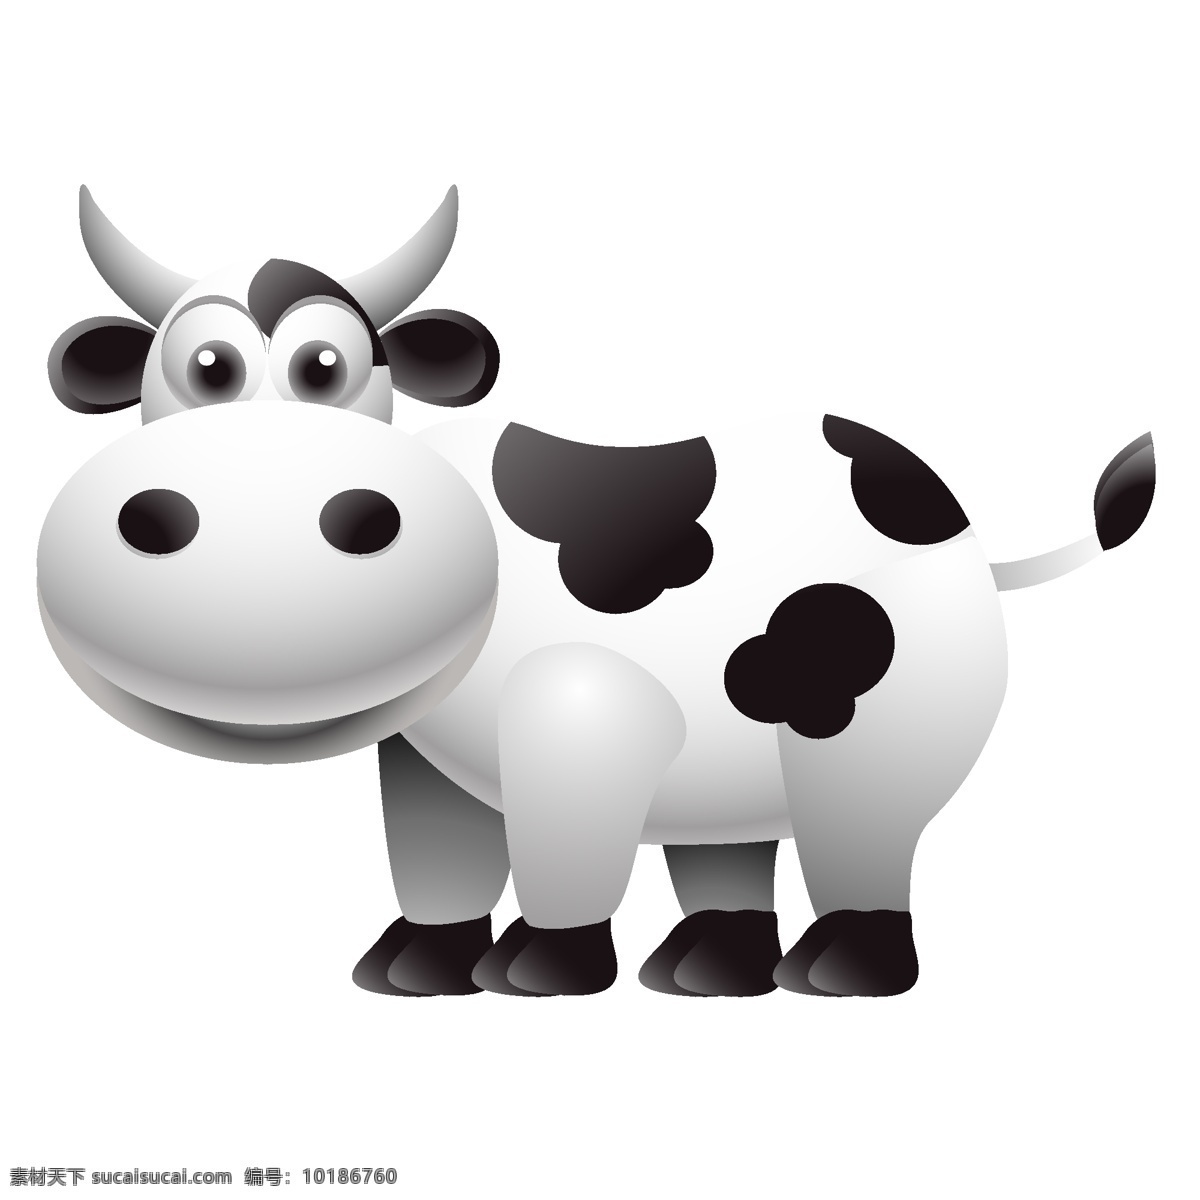 卡通奶牛 卡通牛 黑白牛 牛 奶牛 矢量牛 矢量奶牛 奶牛矢量 包装设计